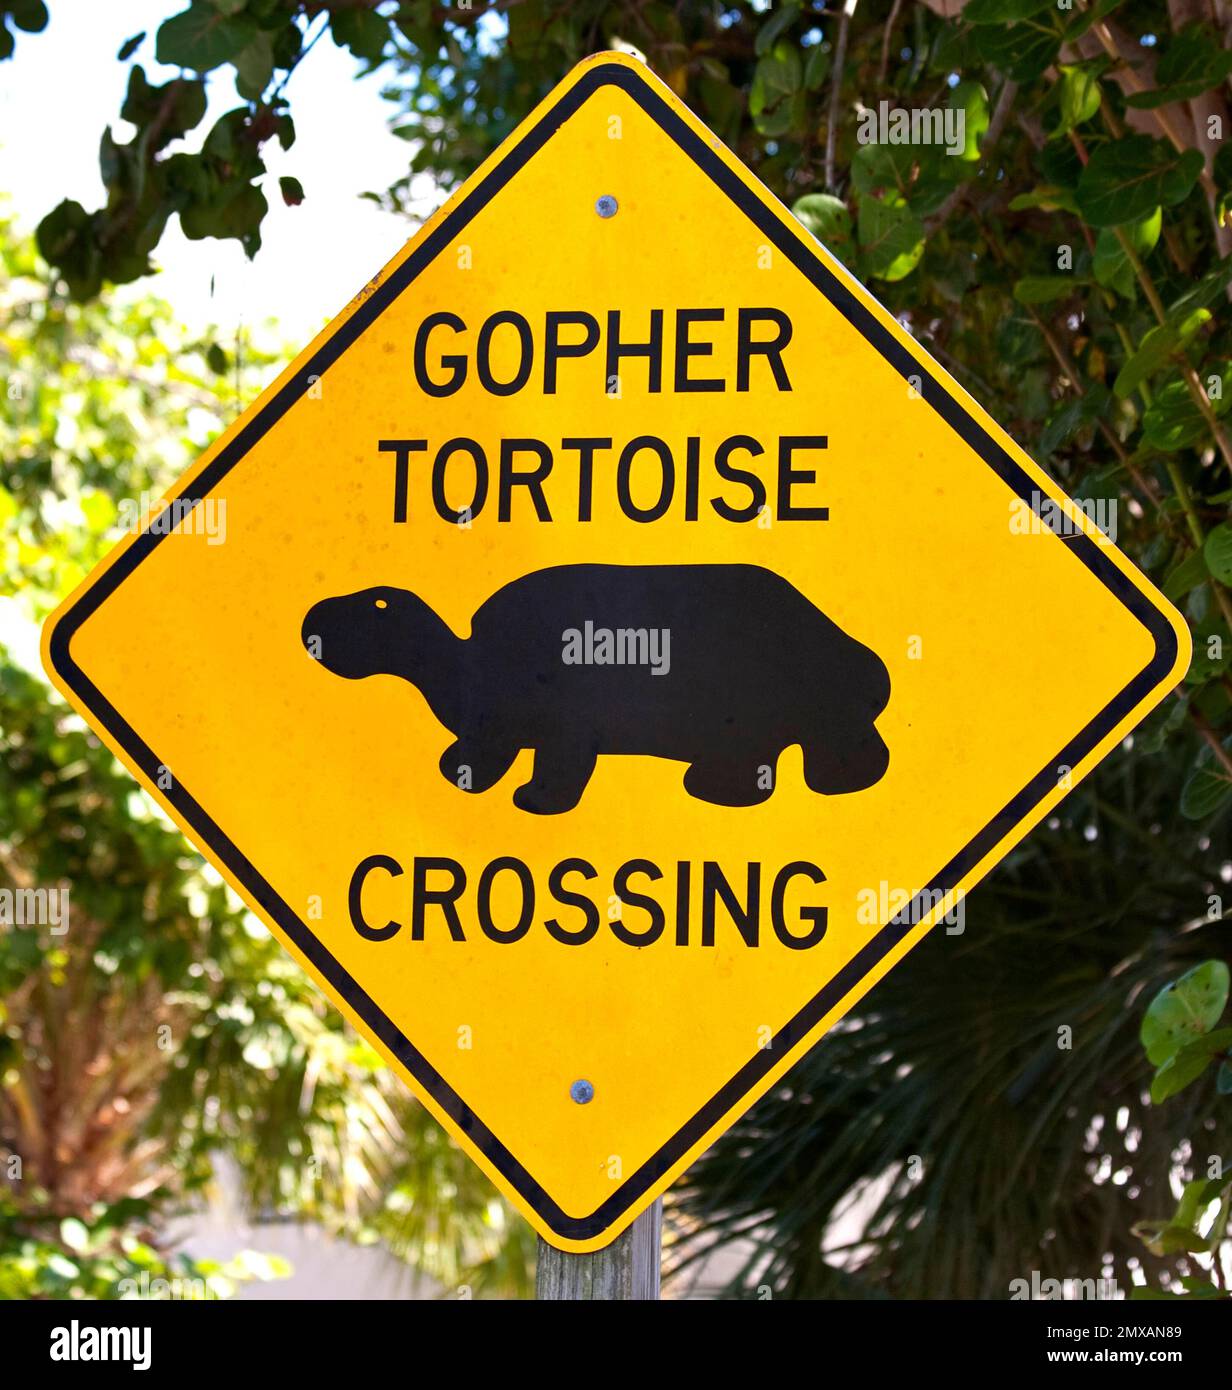 Warningsign vor Schildkroeten-Ueberquerung, Florida/ segnale di avvertimento per l'attraversamento delle tartarughe, Florida, Florida, USA Foto Stock